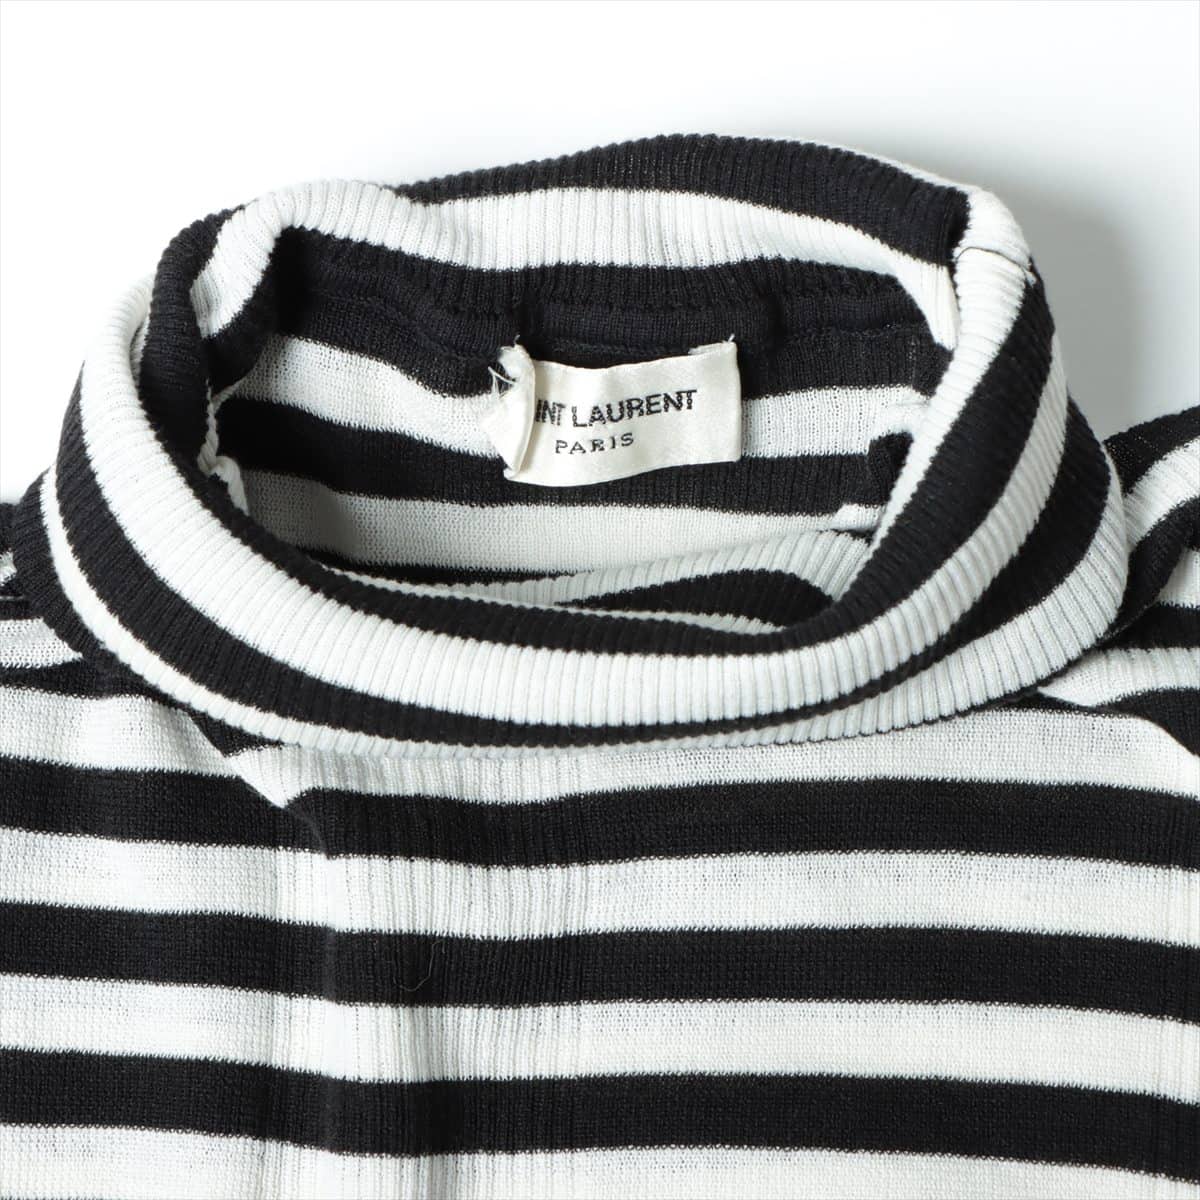 Saint Laurent Paris Cotton Turtleneck Knit S Men's Black × White